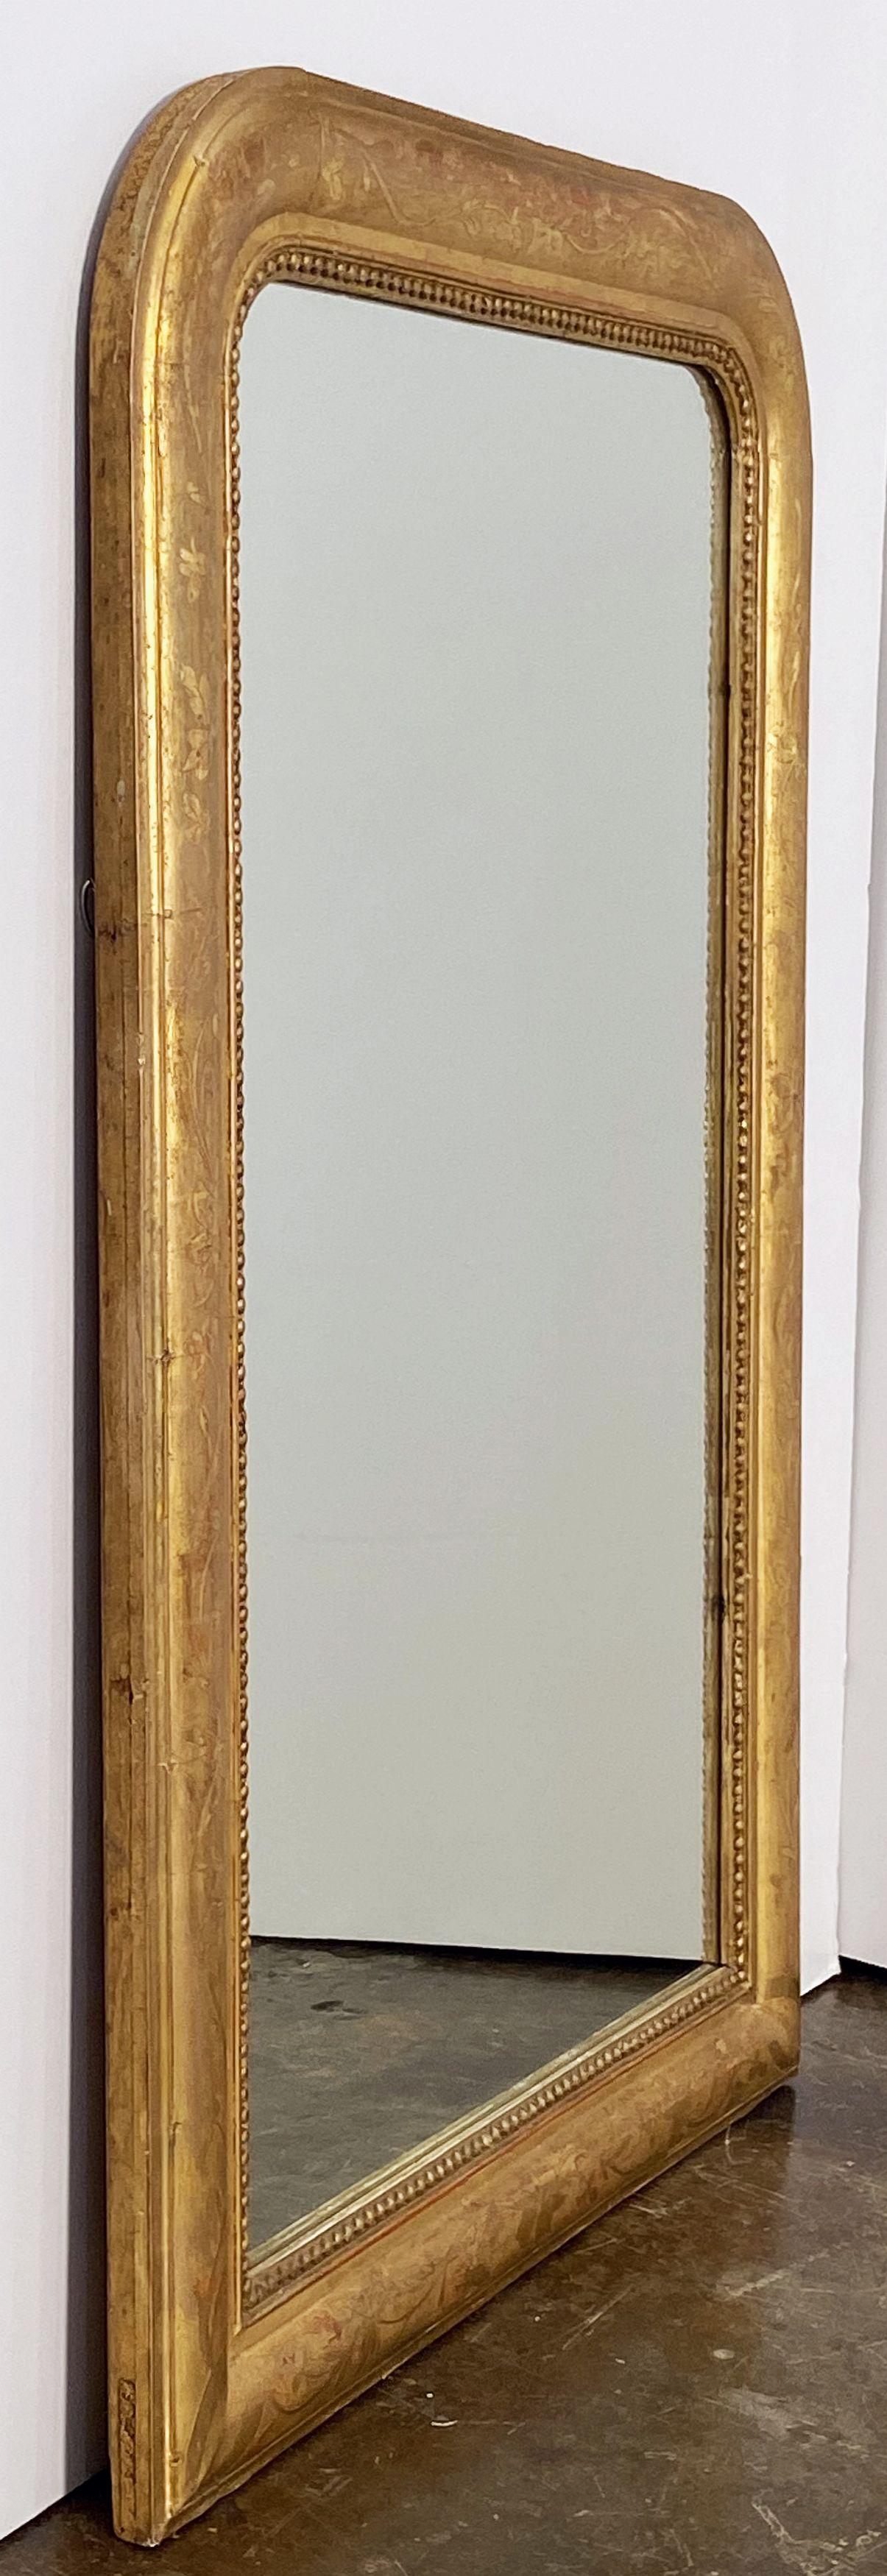 Ein schöner großer vergoldeter Louis-Philippe-Wandspiegel mit einer schönen geformten Einfassung und einem geätzten Blattmuster, das durch Blattgold durchscheint.

Abmessungen: H 38 1/2 Zoll x B 25 1/8 Zoll

Andere Größen in diesem Stil erhältlich.